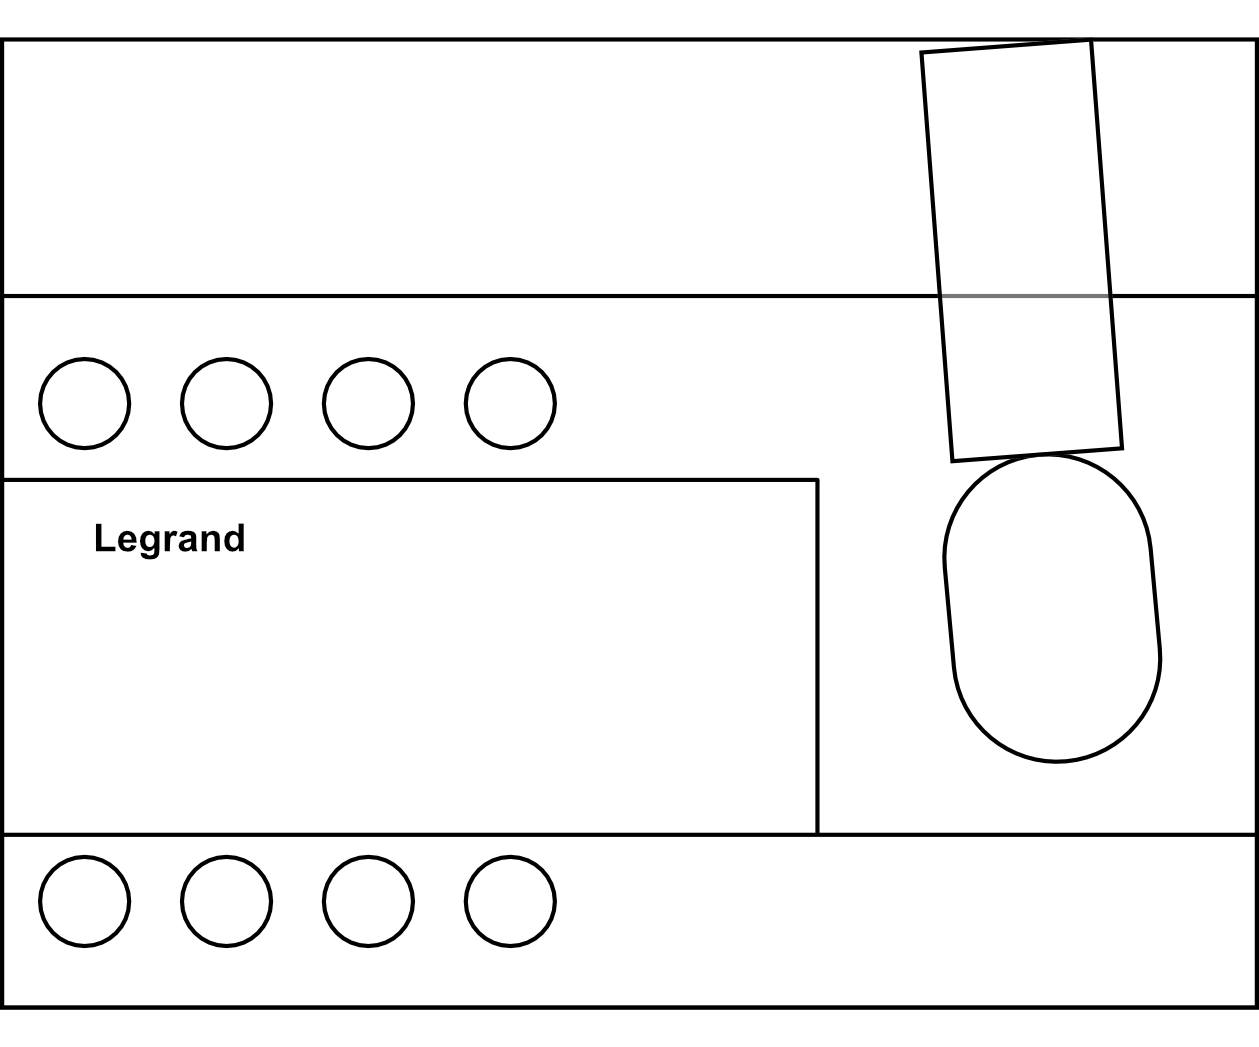 Výkonový odpínač s viditelným stavem kontaktů Legrand VistopTM 100-160A 4P černá rukojeť čelní ovládání